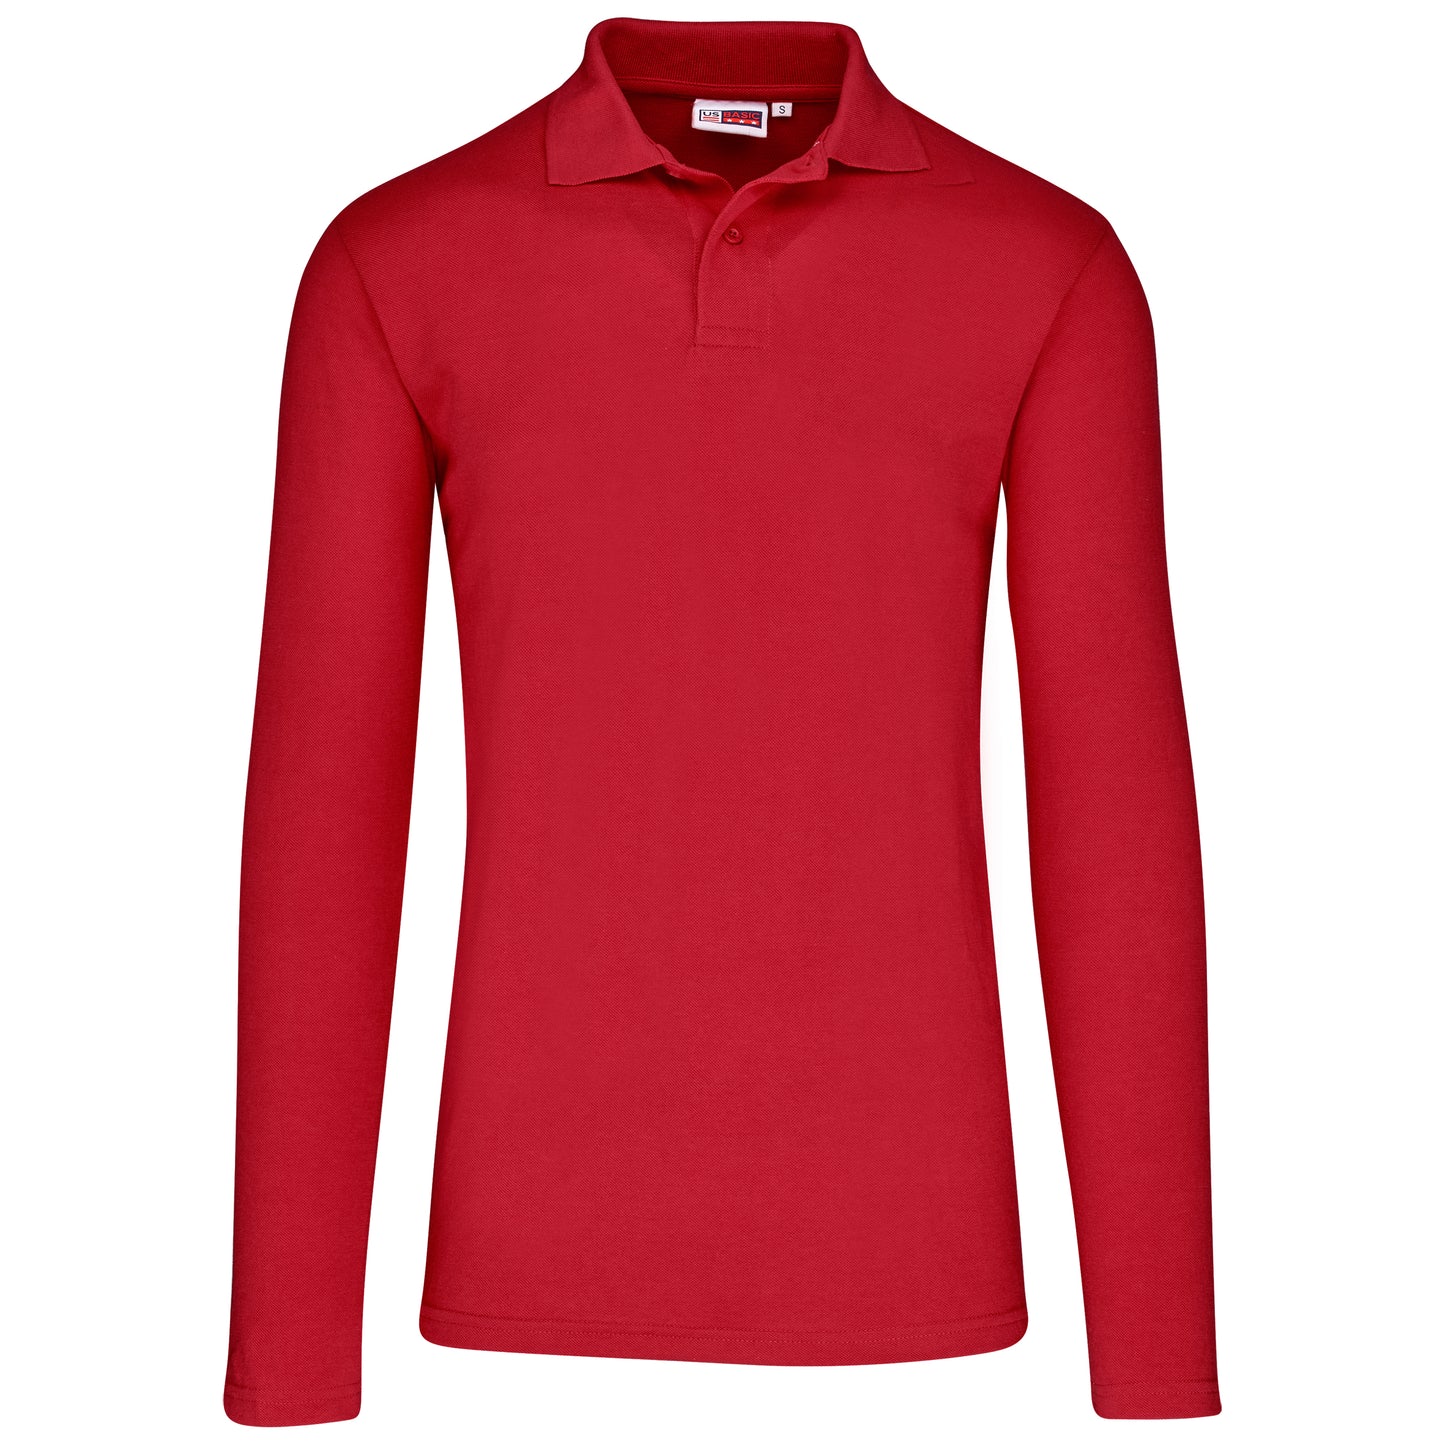 Men's Long Sleeve Elemental Golf Shirt